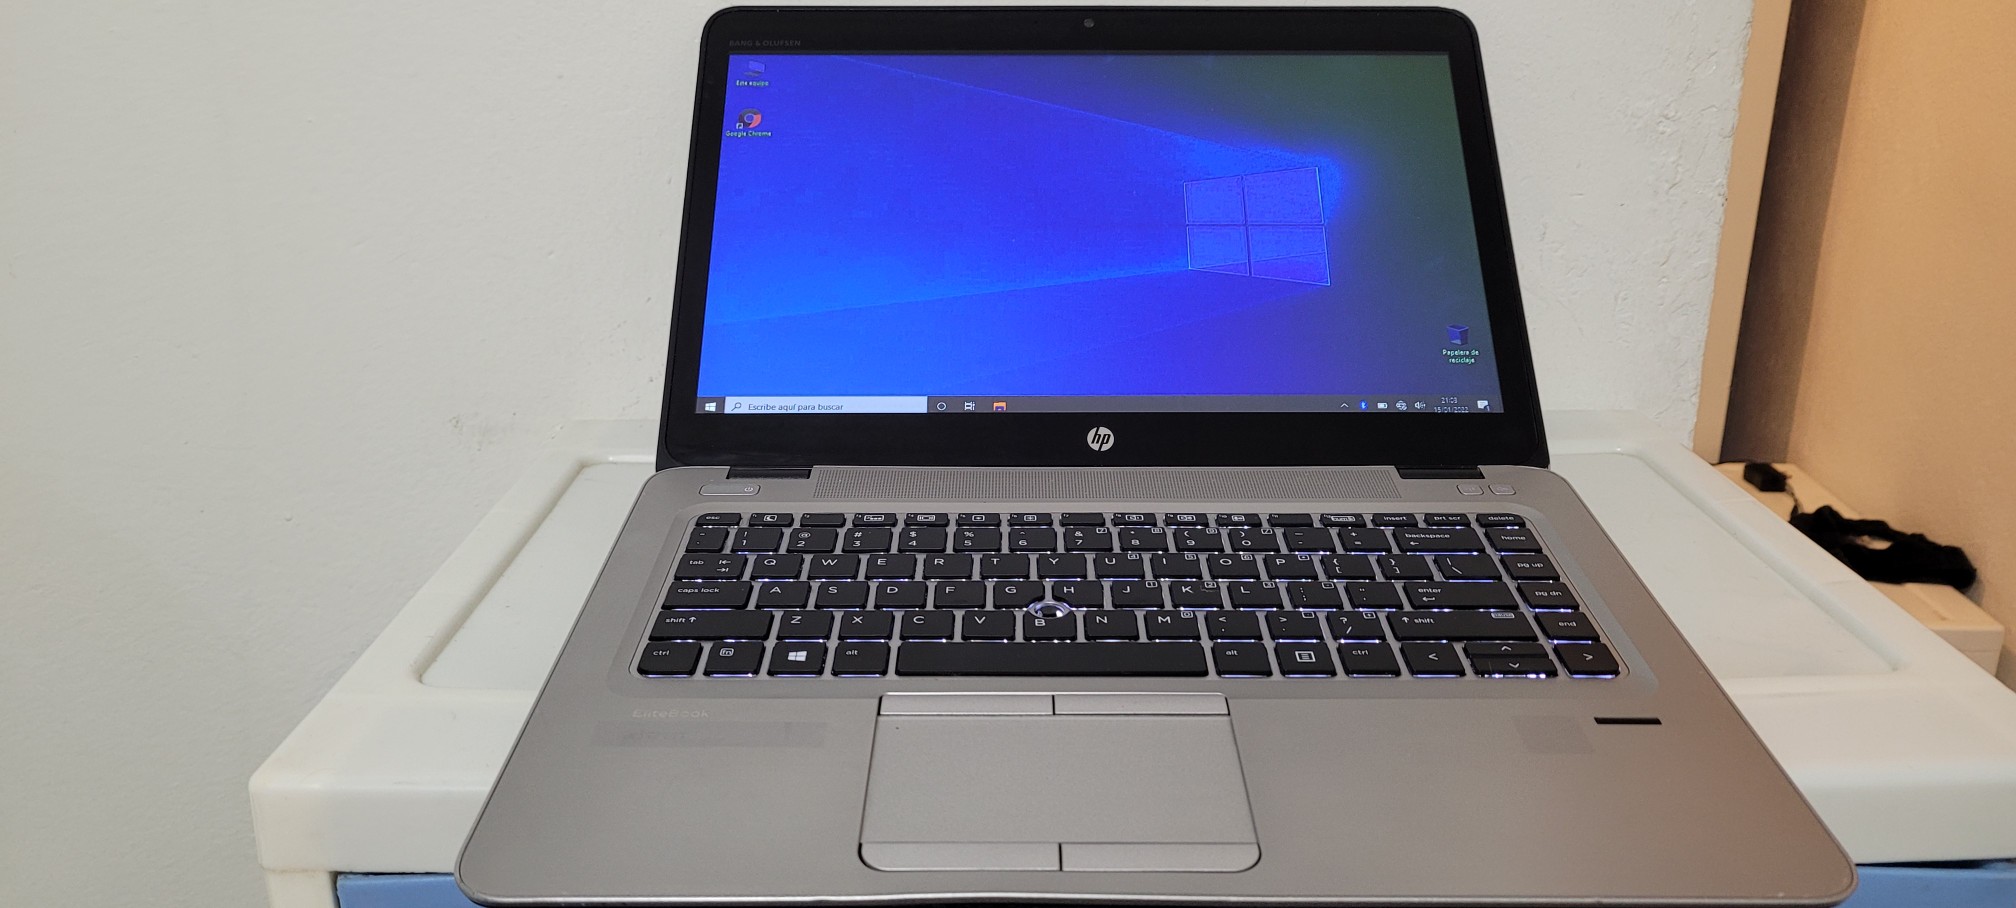 computadoras y laptops - Laptop 840 14 Core i5 7ma Gen Ram 8gb ddr4 Disco 128gb Y 320gb full 0